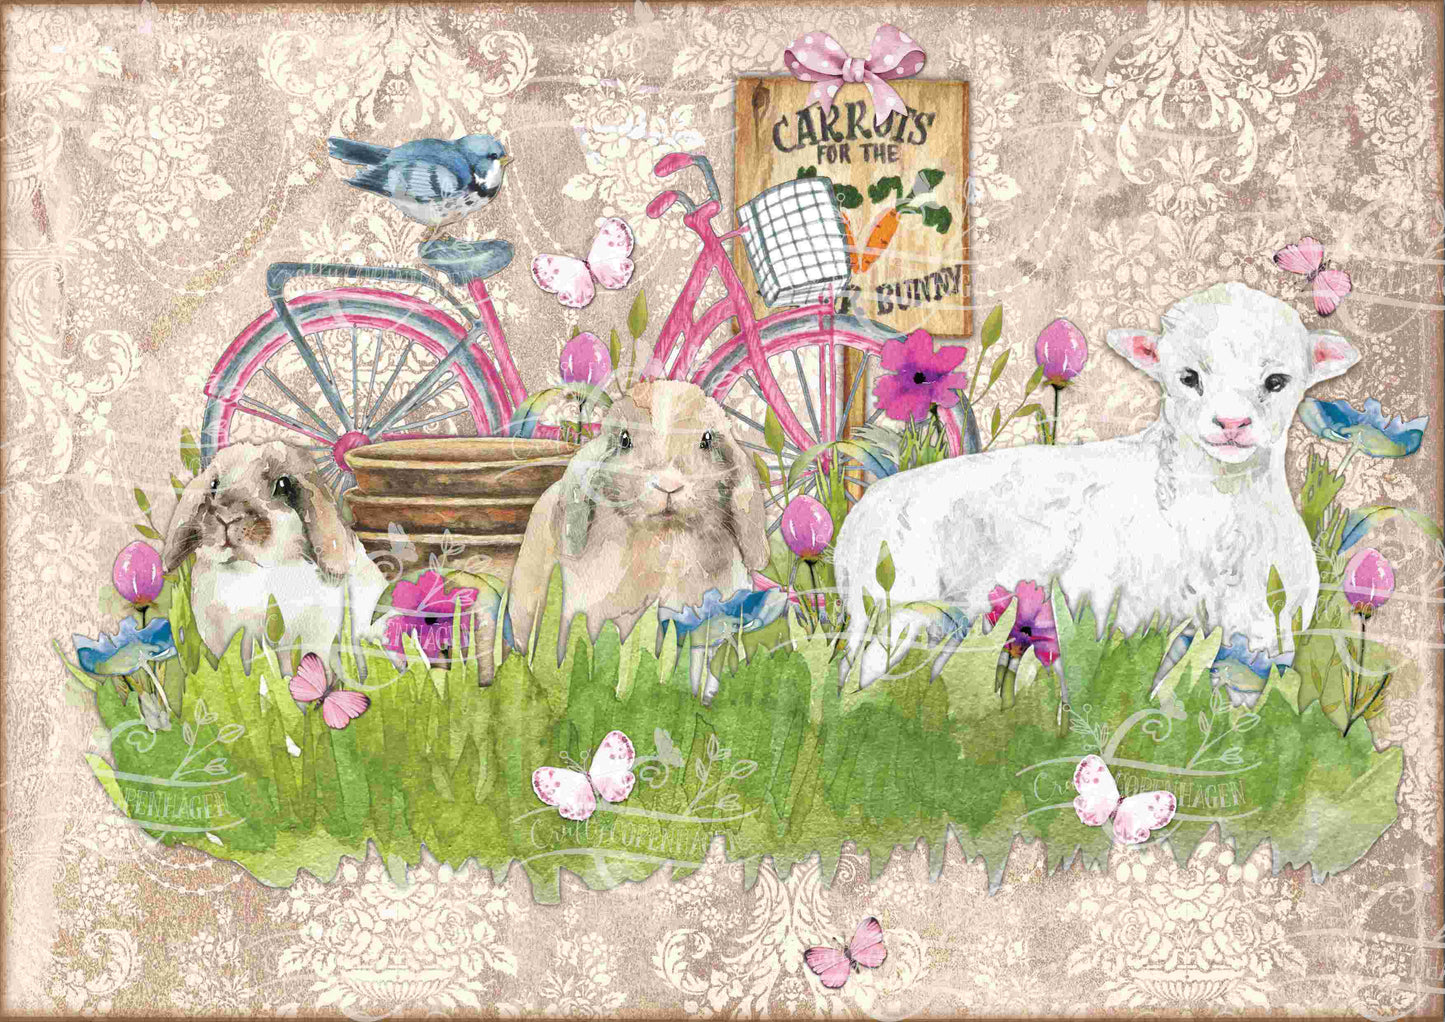 Eggstra Hoppy Easter Junk Journal Kit - 12 Pages Instant Download & Print Digital Scrapbook Paper, Cardmaking, Collage Paper, Spring, Easter